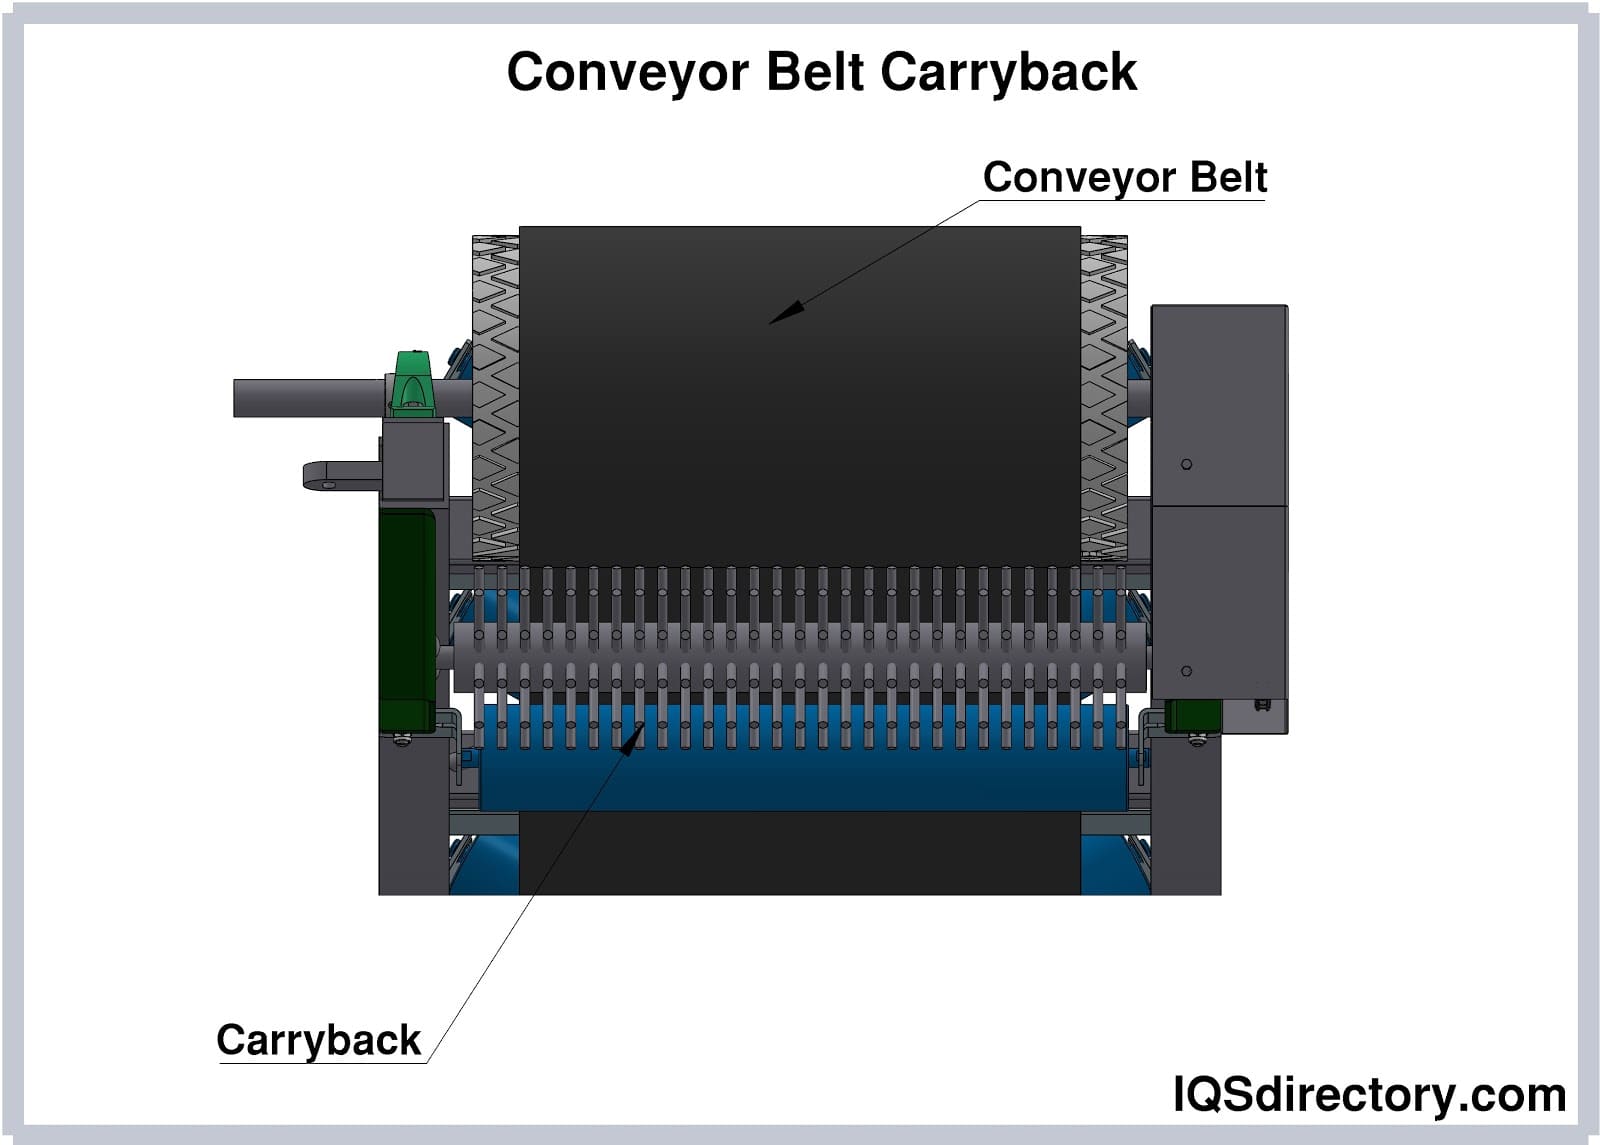 Conveyor Belt Carryback